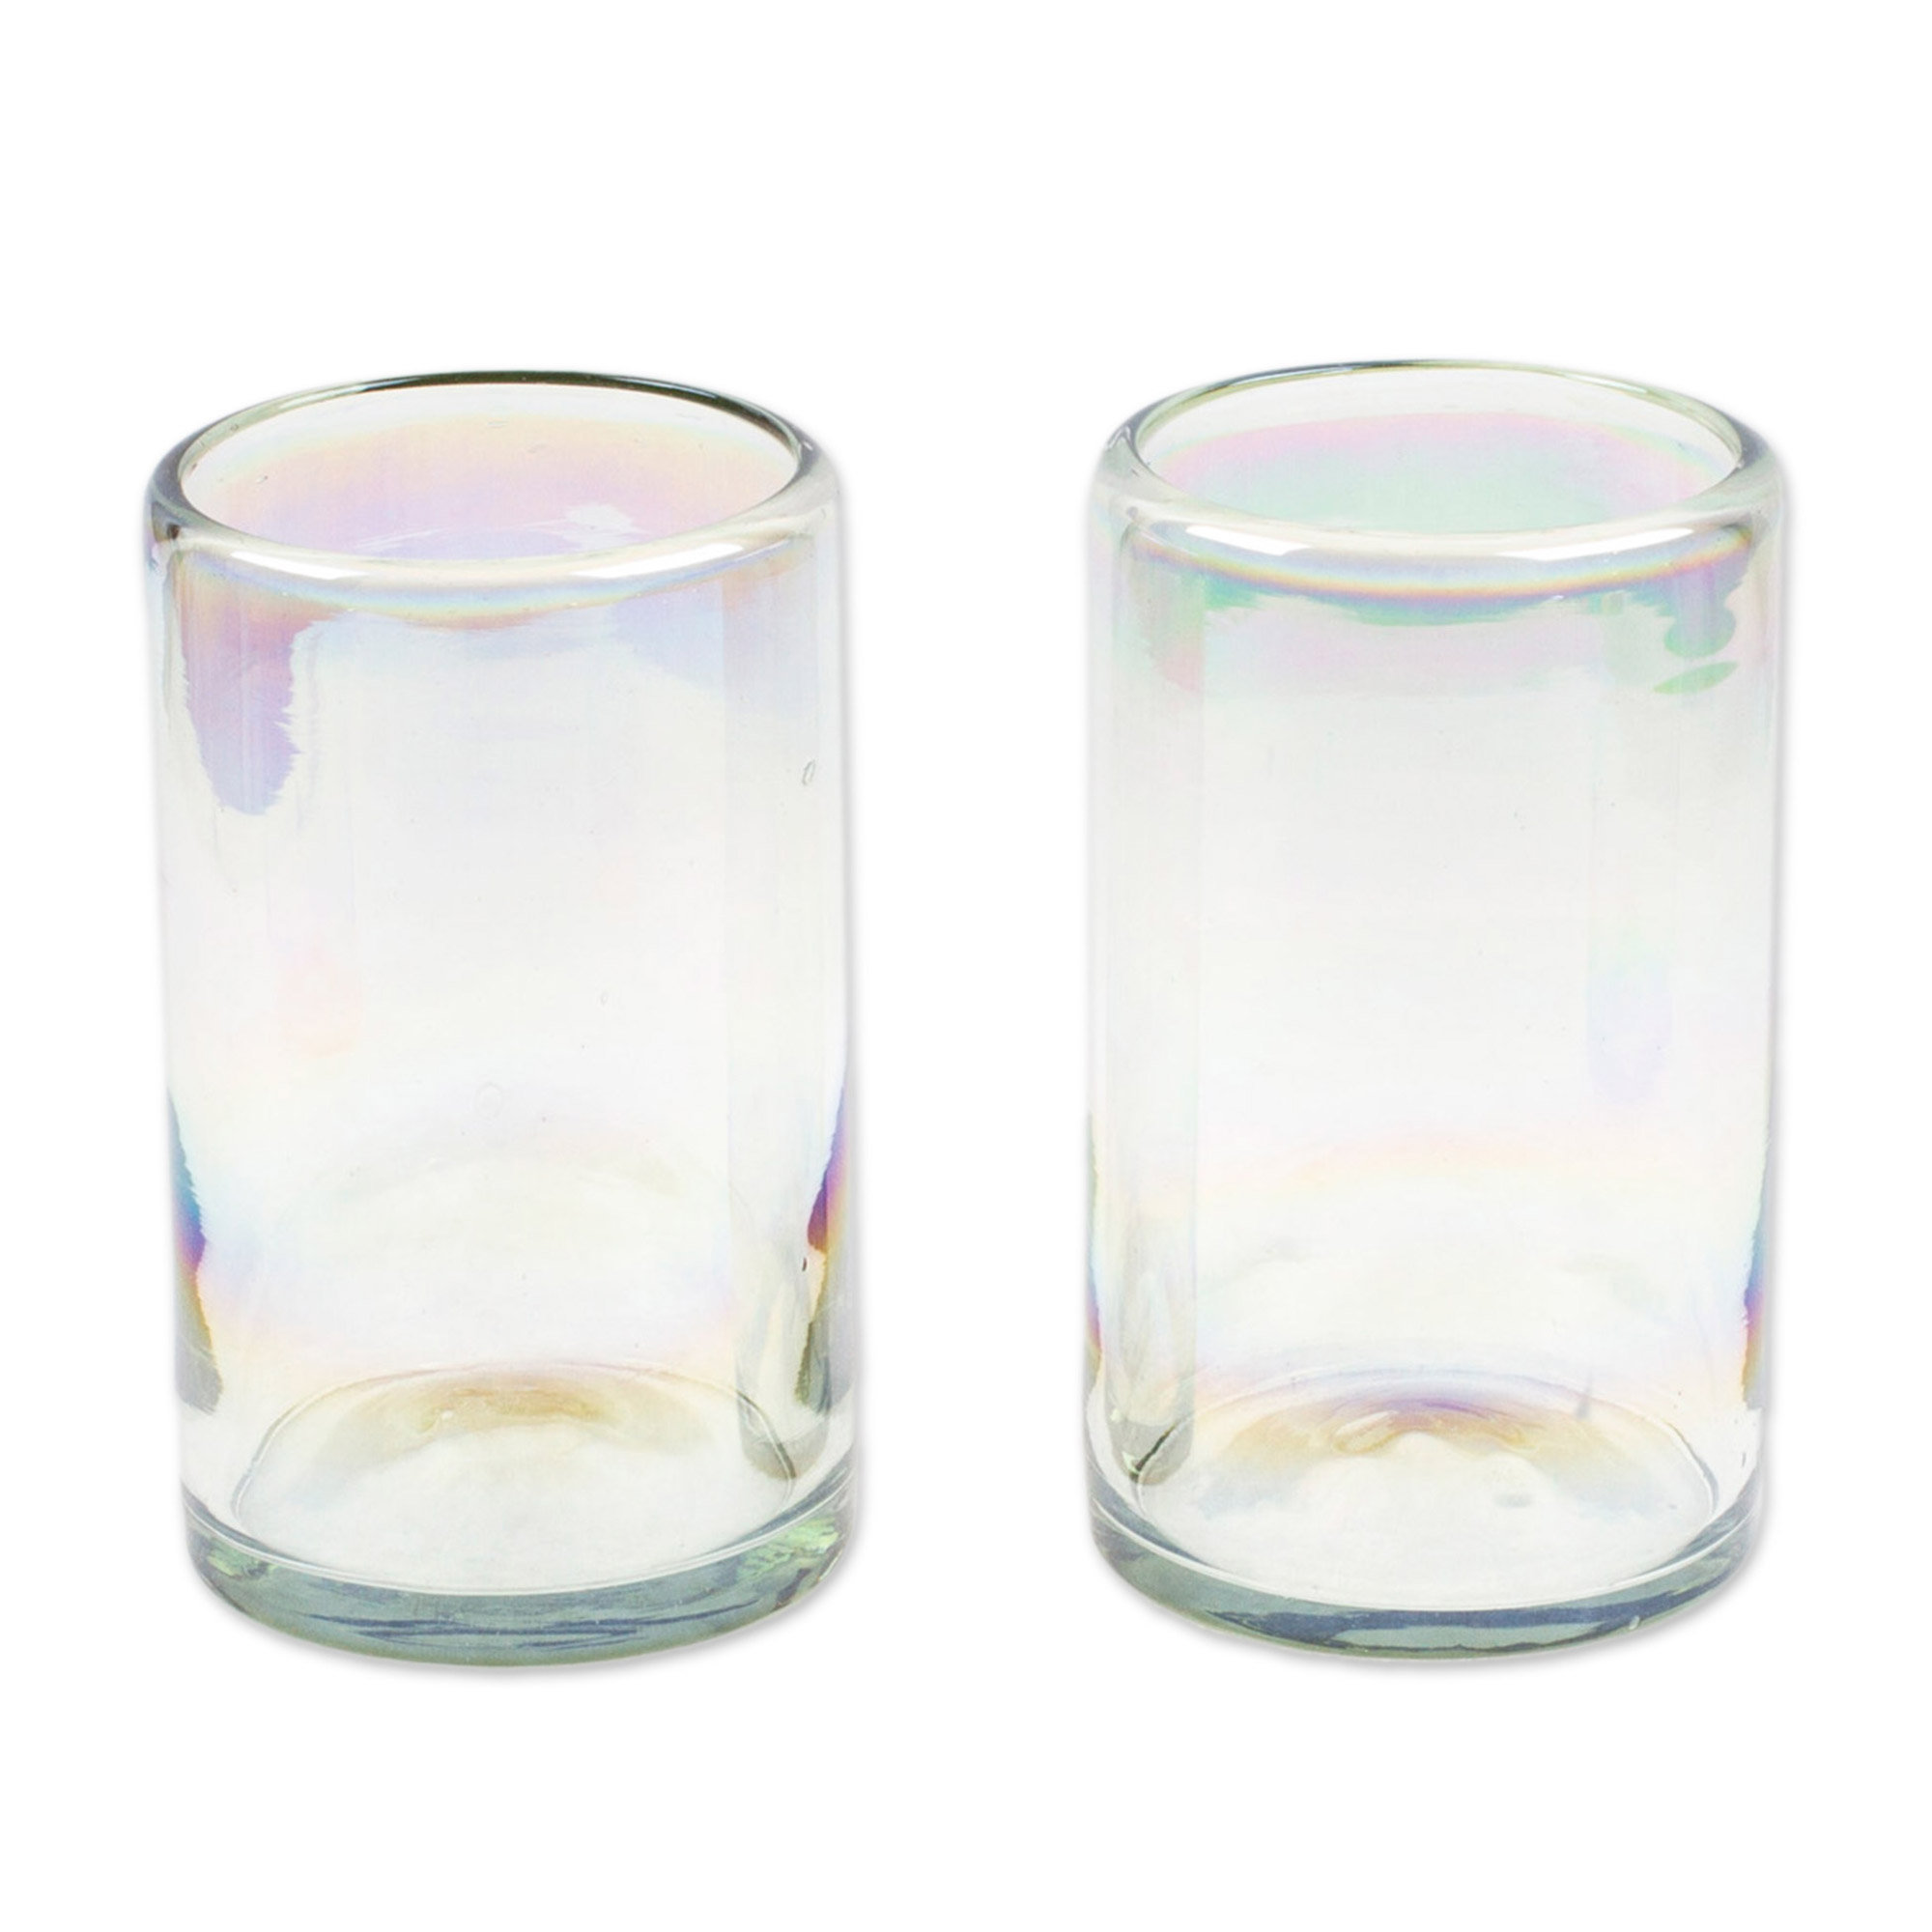 https://assets.wfcdn.com/im/59391769/compr-r85/2394/239404911/highland-dunes-ruprecht-2-piece-16oz-glass-drinking-glass-glassware-set.jpg